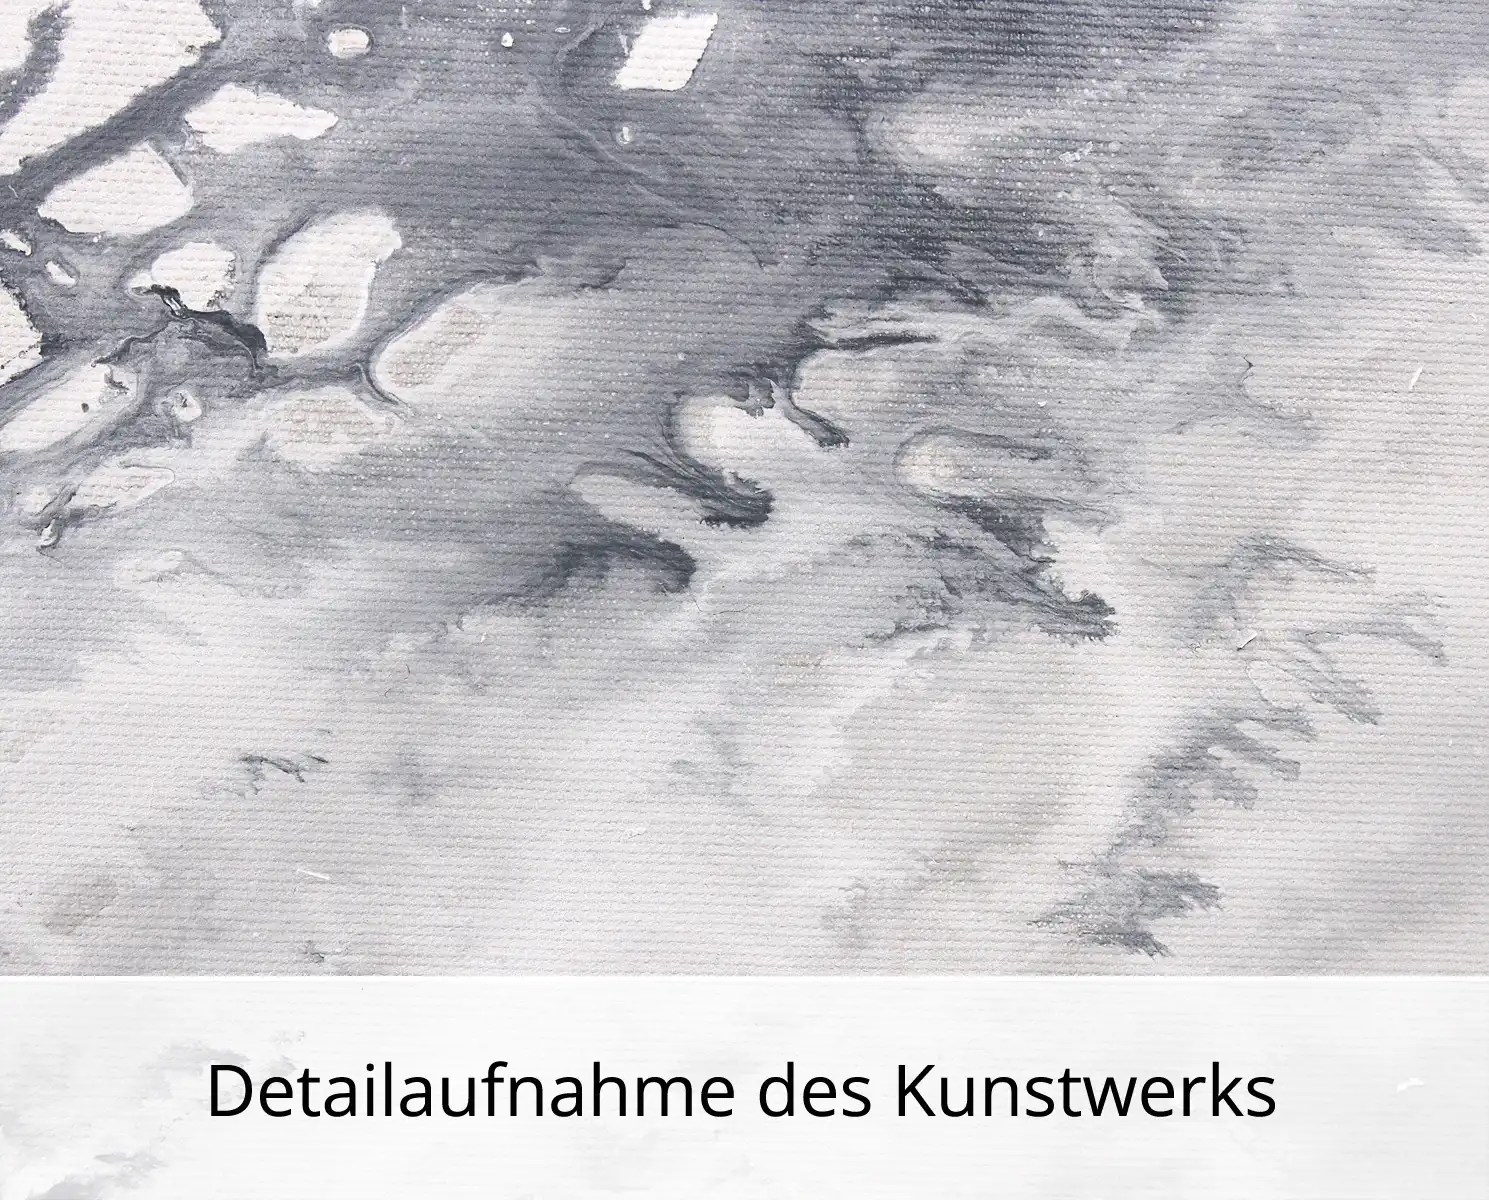 M.Kühne: "Touch of nature", modernes Originalgemälde (Unikat)